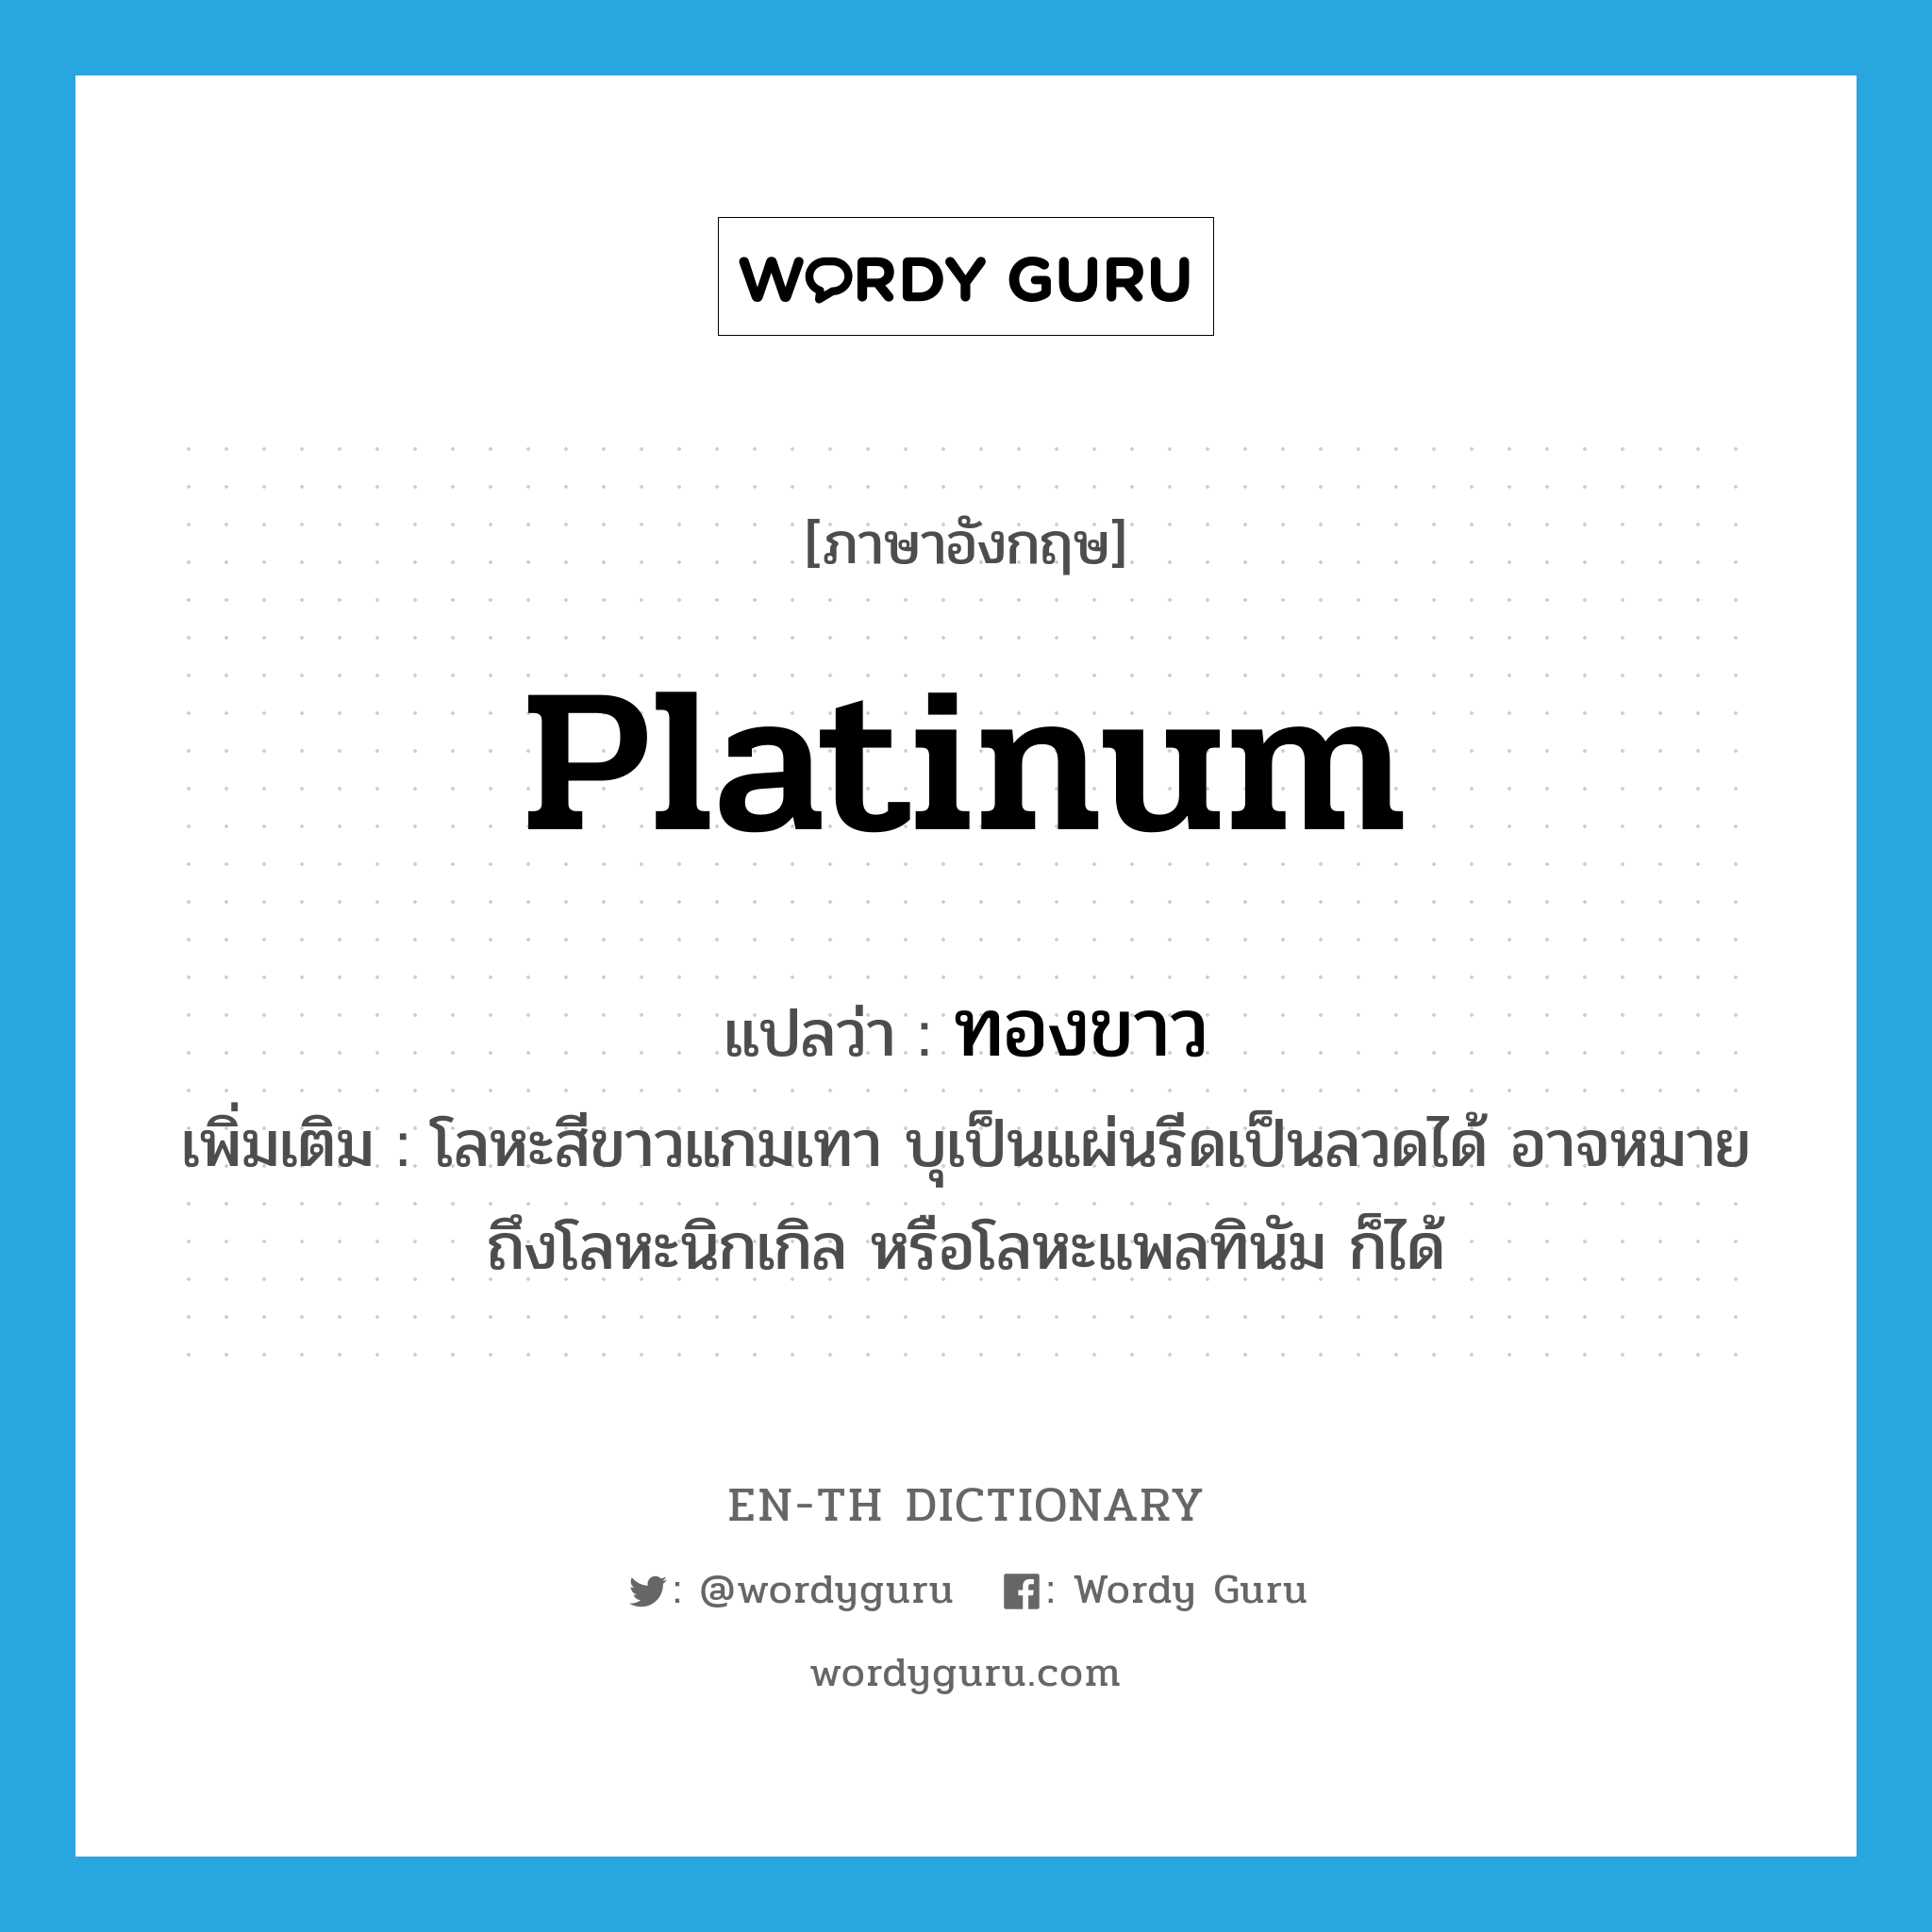 platinum แปลว่า?, คำศัพท์ภาษาอังกฤษ platinum แปลว่า ทองขาว ประเภท N เพิ่มเติม โลหะสีขาวแกมเทา บุเป็นแผ่นรีดเป็นลวดได้ อาจหมายถึงโลหะนิกเกิล หรือโลหะแพลทินัม ก็ได้ หมวด N